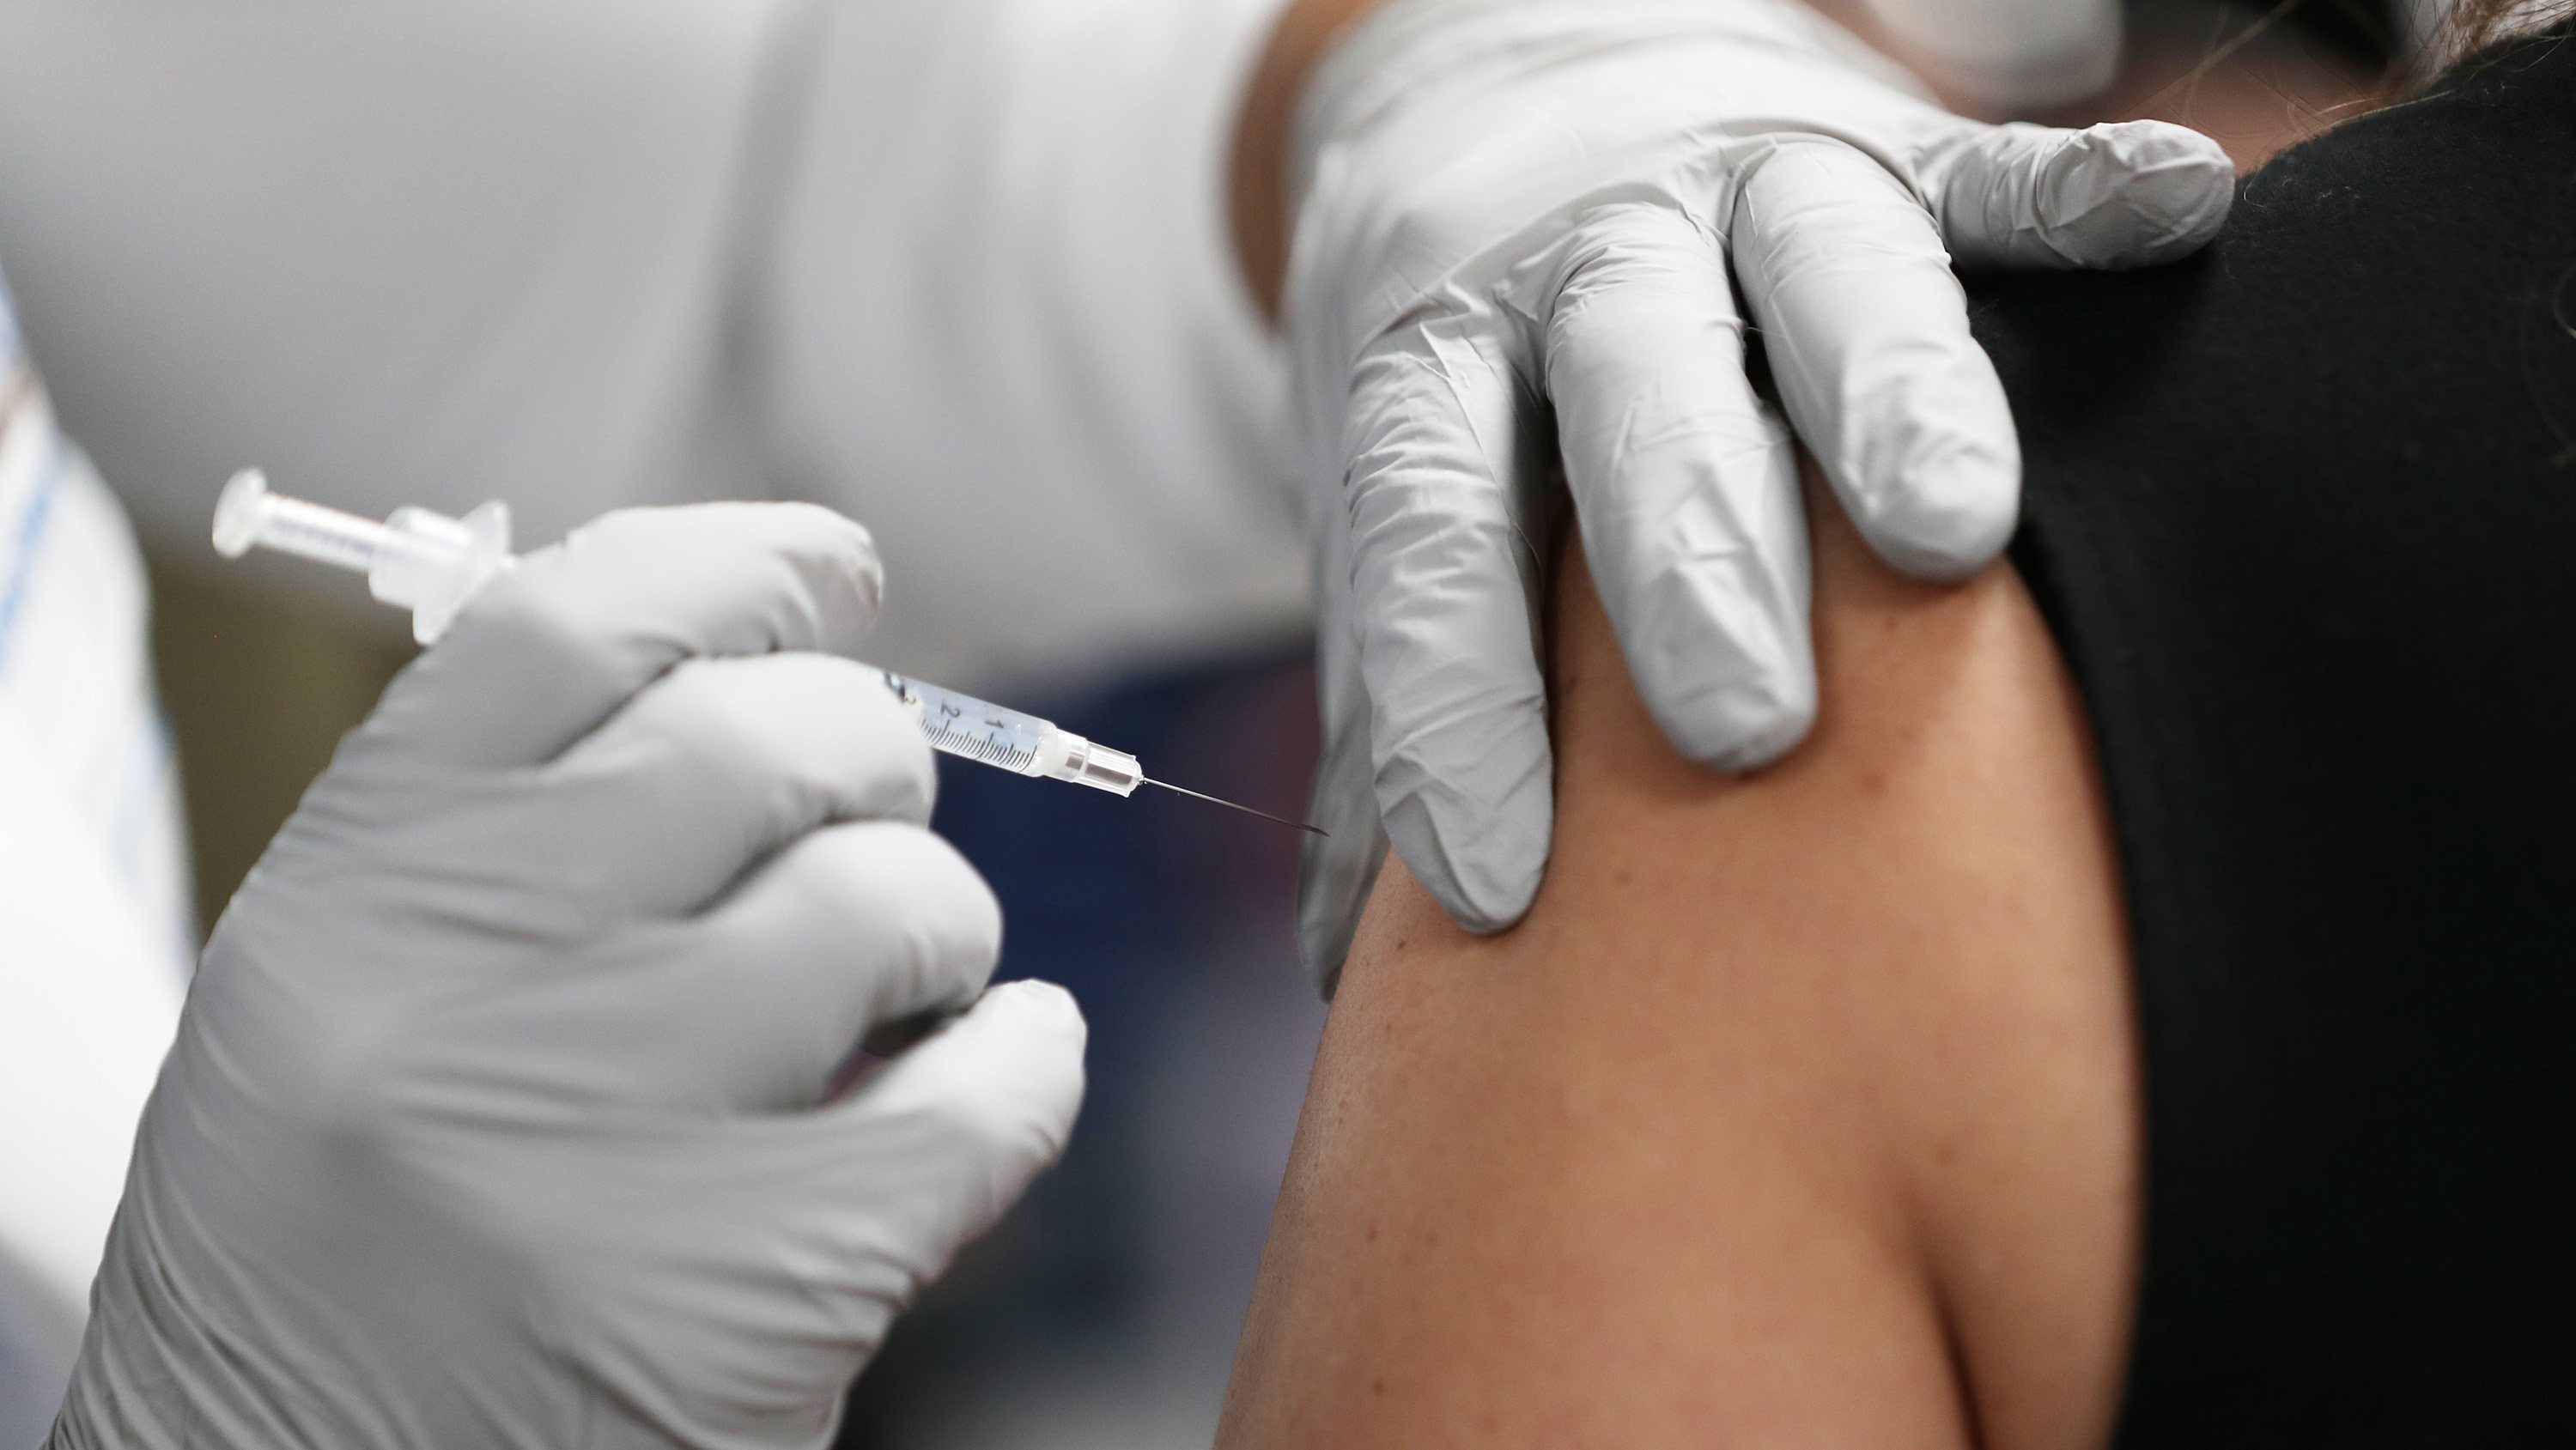 Vacina contra a Covid-19